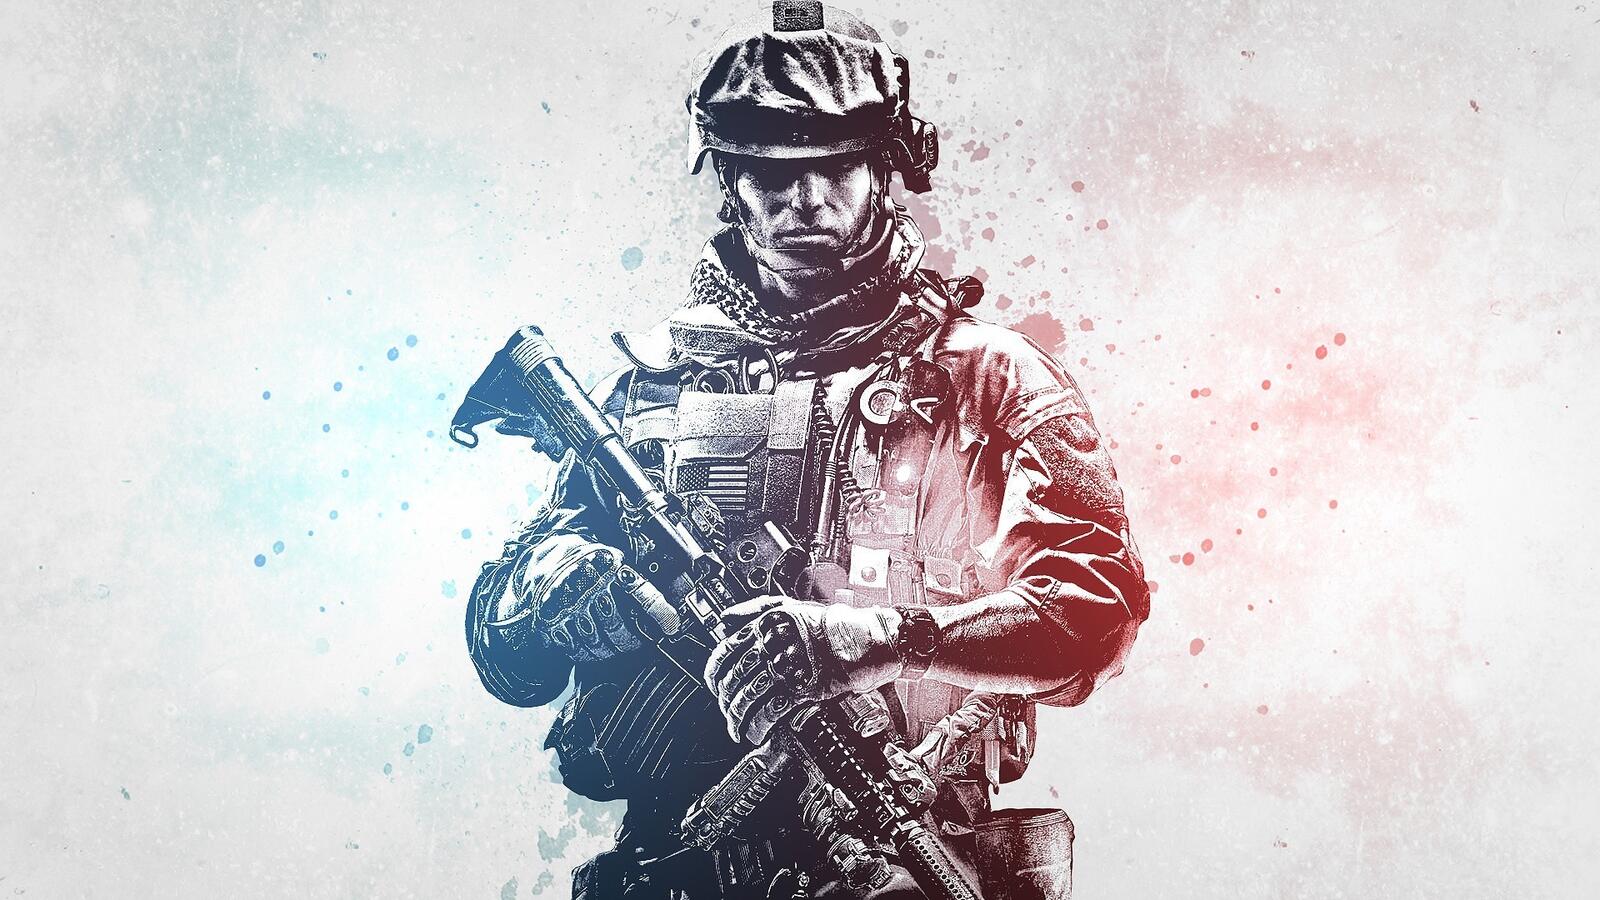 Бесплатное фото Картинка с солдатом из игры Battlefield 3